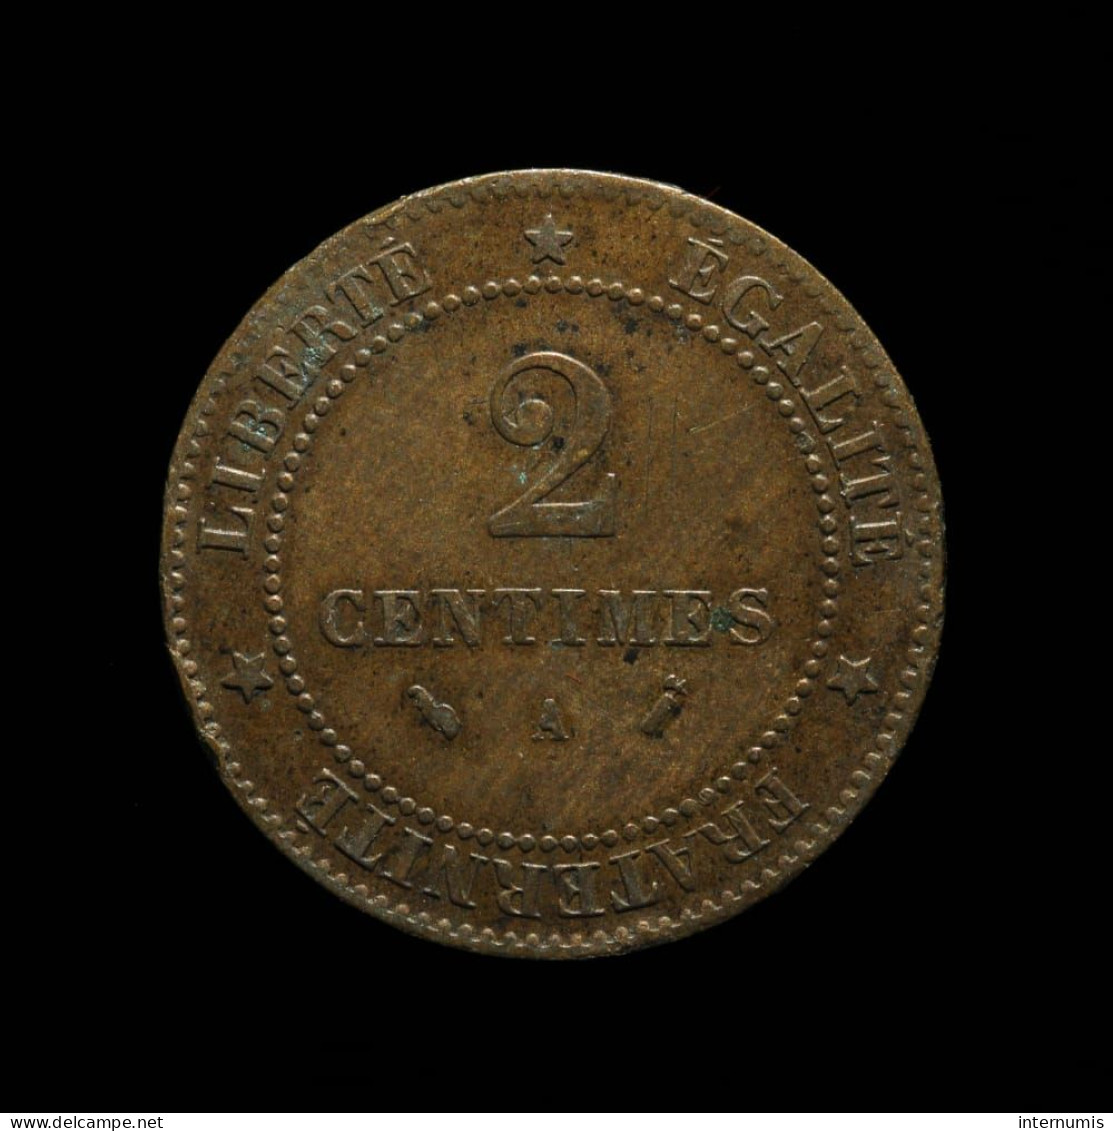 ASSEZ RARE - France, Cérès, 2 Centimes, 1894, A - Paris, Bronze, TTB (EF), KM#827.1, G.105, F.109/20 - 2 Centimes